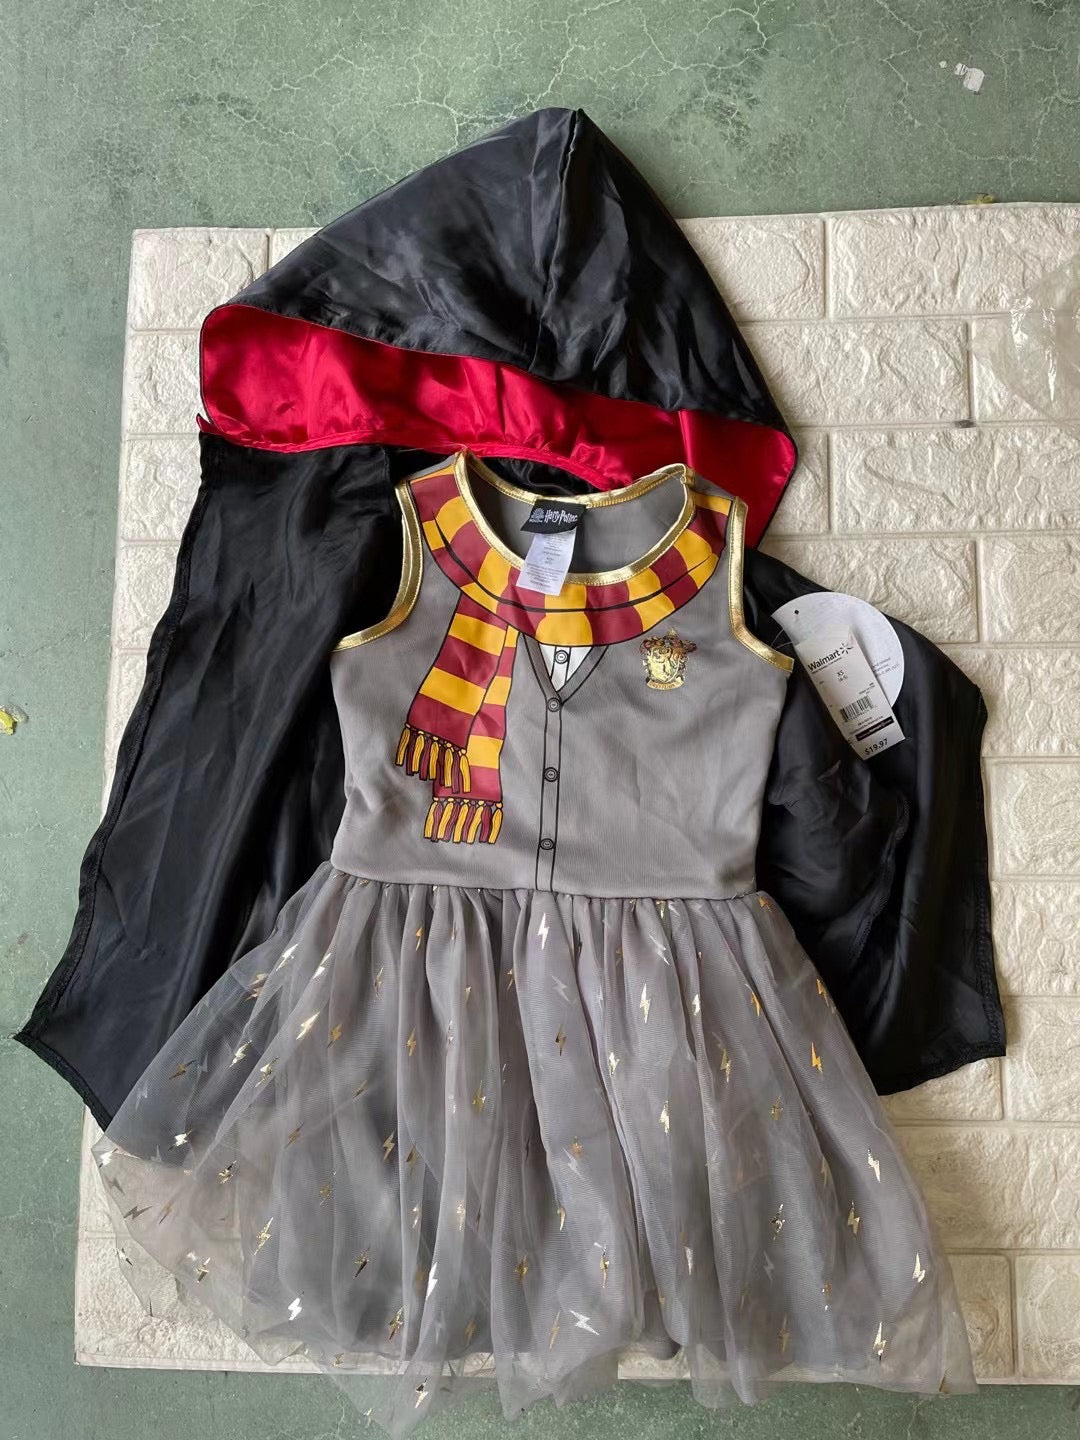 Harry Potter Gryffindor Uniform Robe Dress Up Costume Kit For Kids 4-6 |  eBay